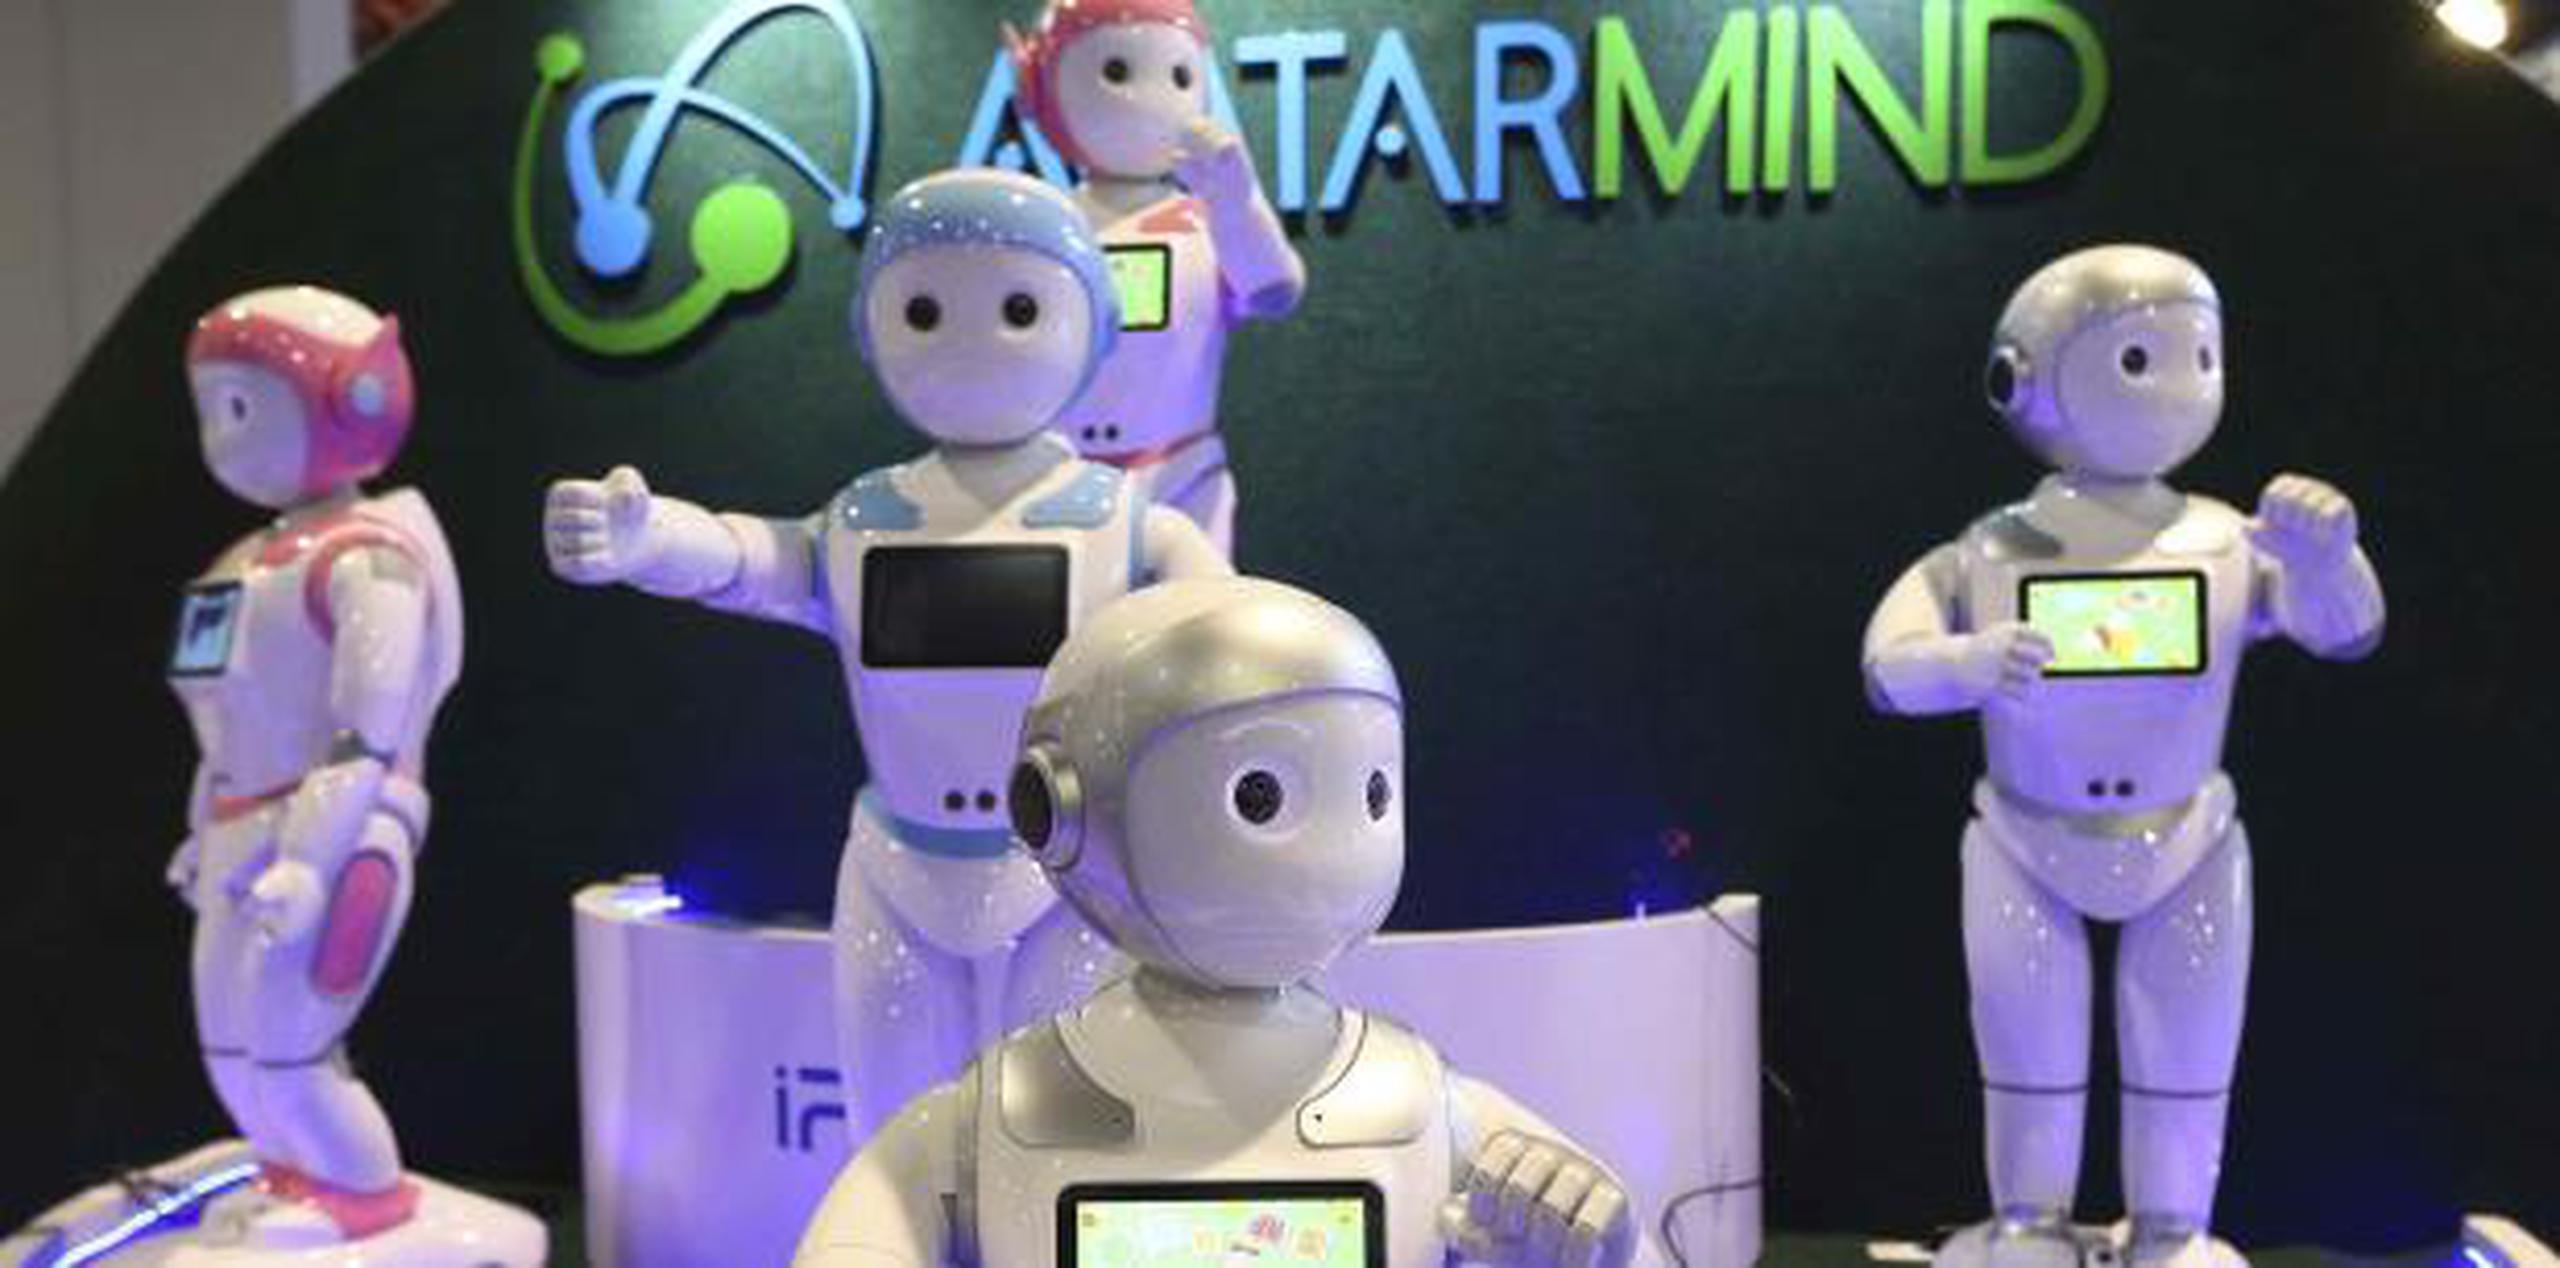 Desarrollado por la empresa AvatarMind, estos robots fueron diseñados para asistir con la educación de los niños y el cuidado de los adultos mayores. Es un robot humanoide de  comportamiento amigable capaz de sostener conversaciones en “lenguaje natural”.